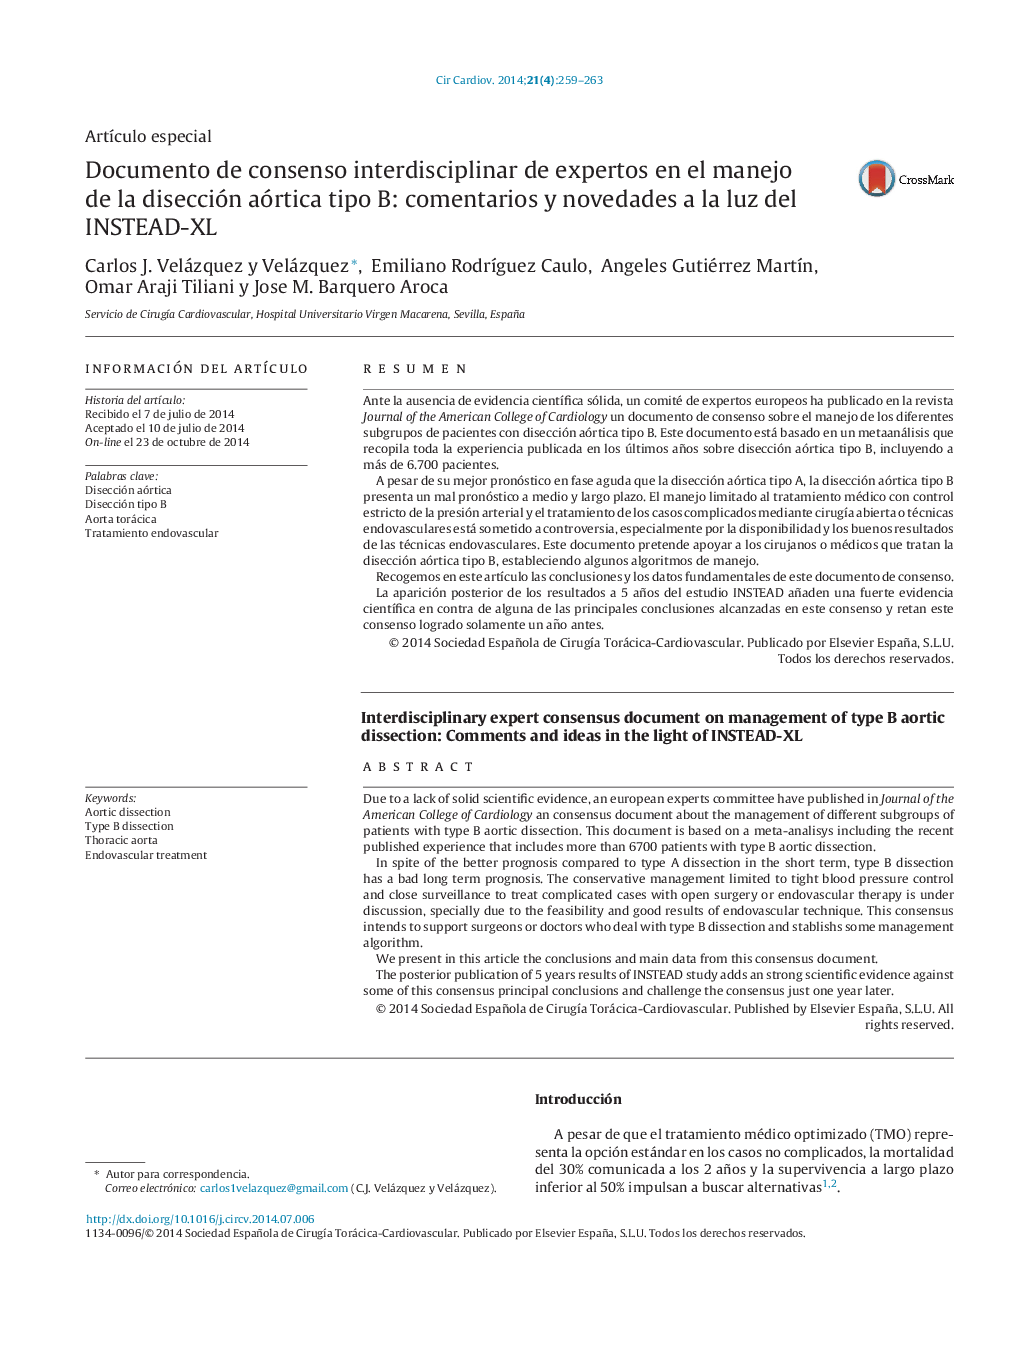 Documento de consenso interdisciplinar de expertos en el manejo de la disección aórtica tipo B: comentarios y novedades a la luz del INSTEAD-XL